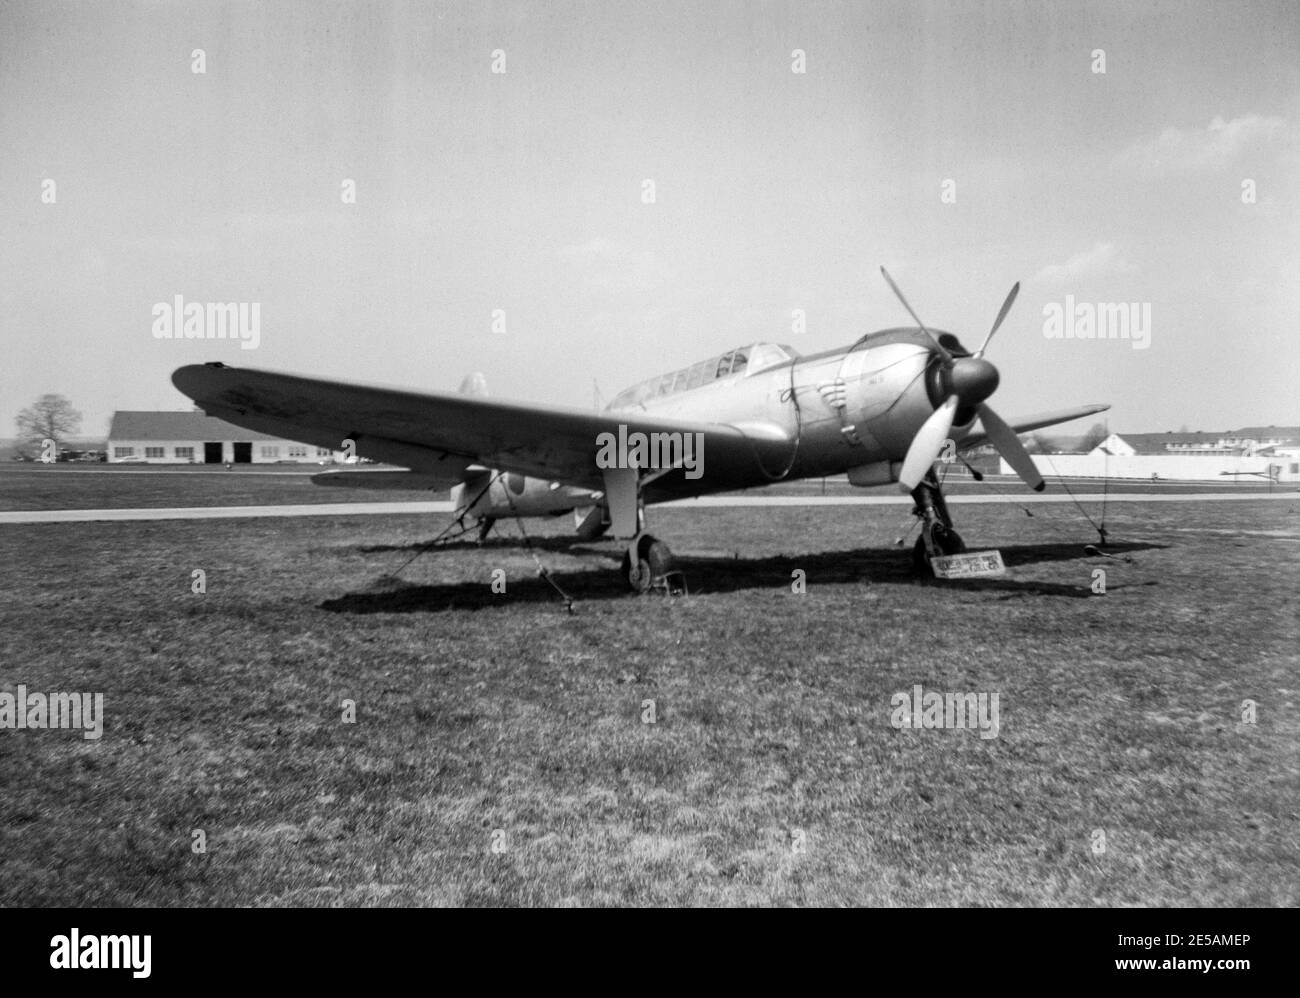 Vintage 1958 Fotografía en blanco y negro que muestra una Fuerza Aérea Japonesa Nakajima B6N-2 Tenzan, nombre en código aliado Jill, avión en exhibición en la Estación Aérea Naval en Willow Grove, Pennsylvania, Estados Unidos. Capturado por las Fuerzas Aliadas en Japón en 1945. Foto de stock